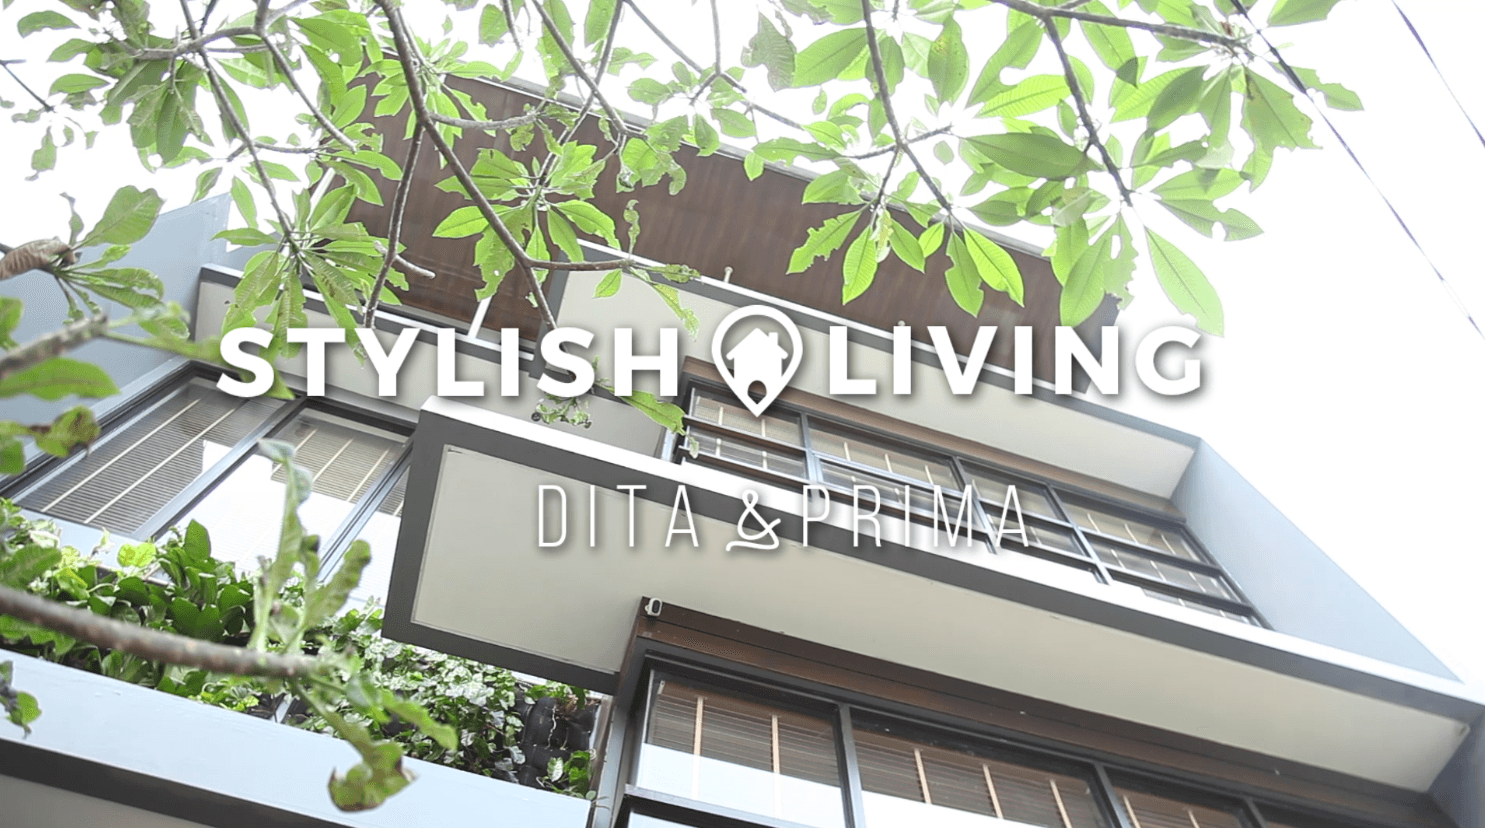 Stylish Living: Dita & Prima